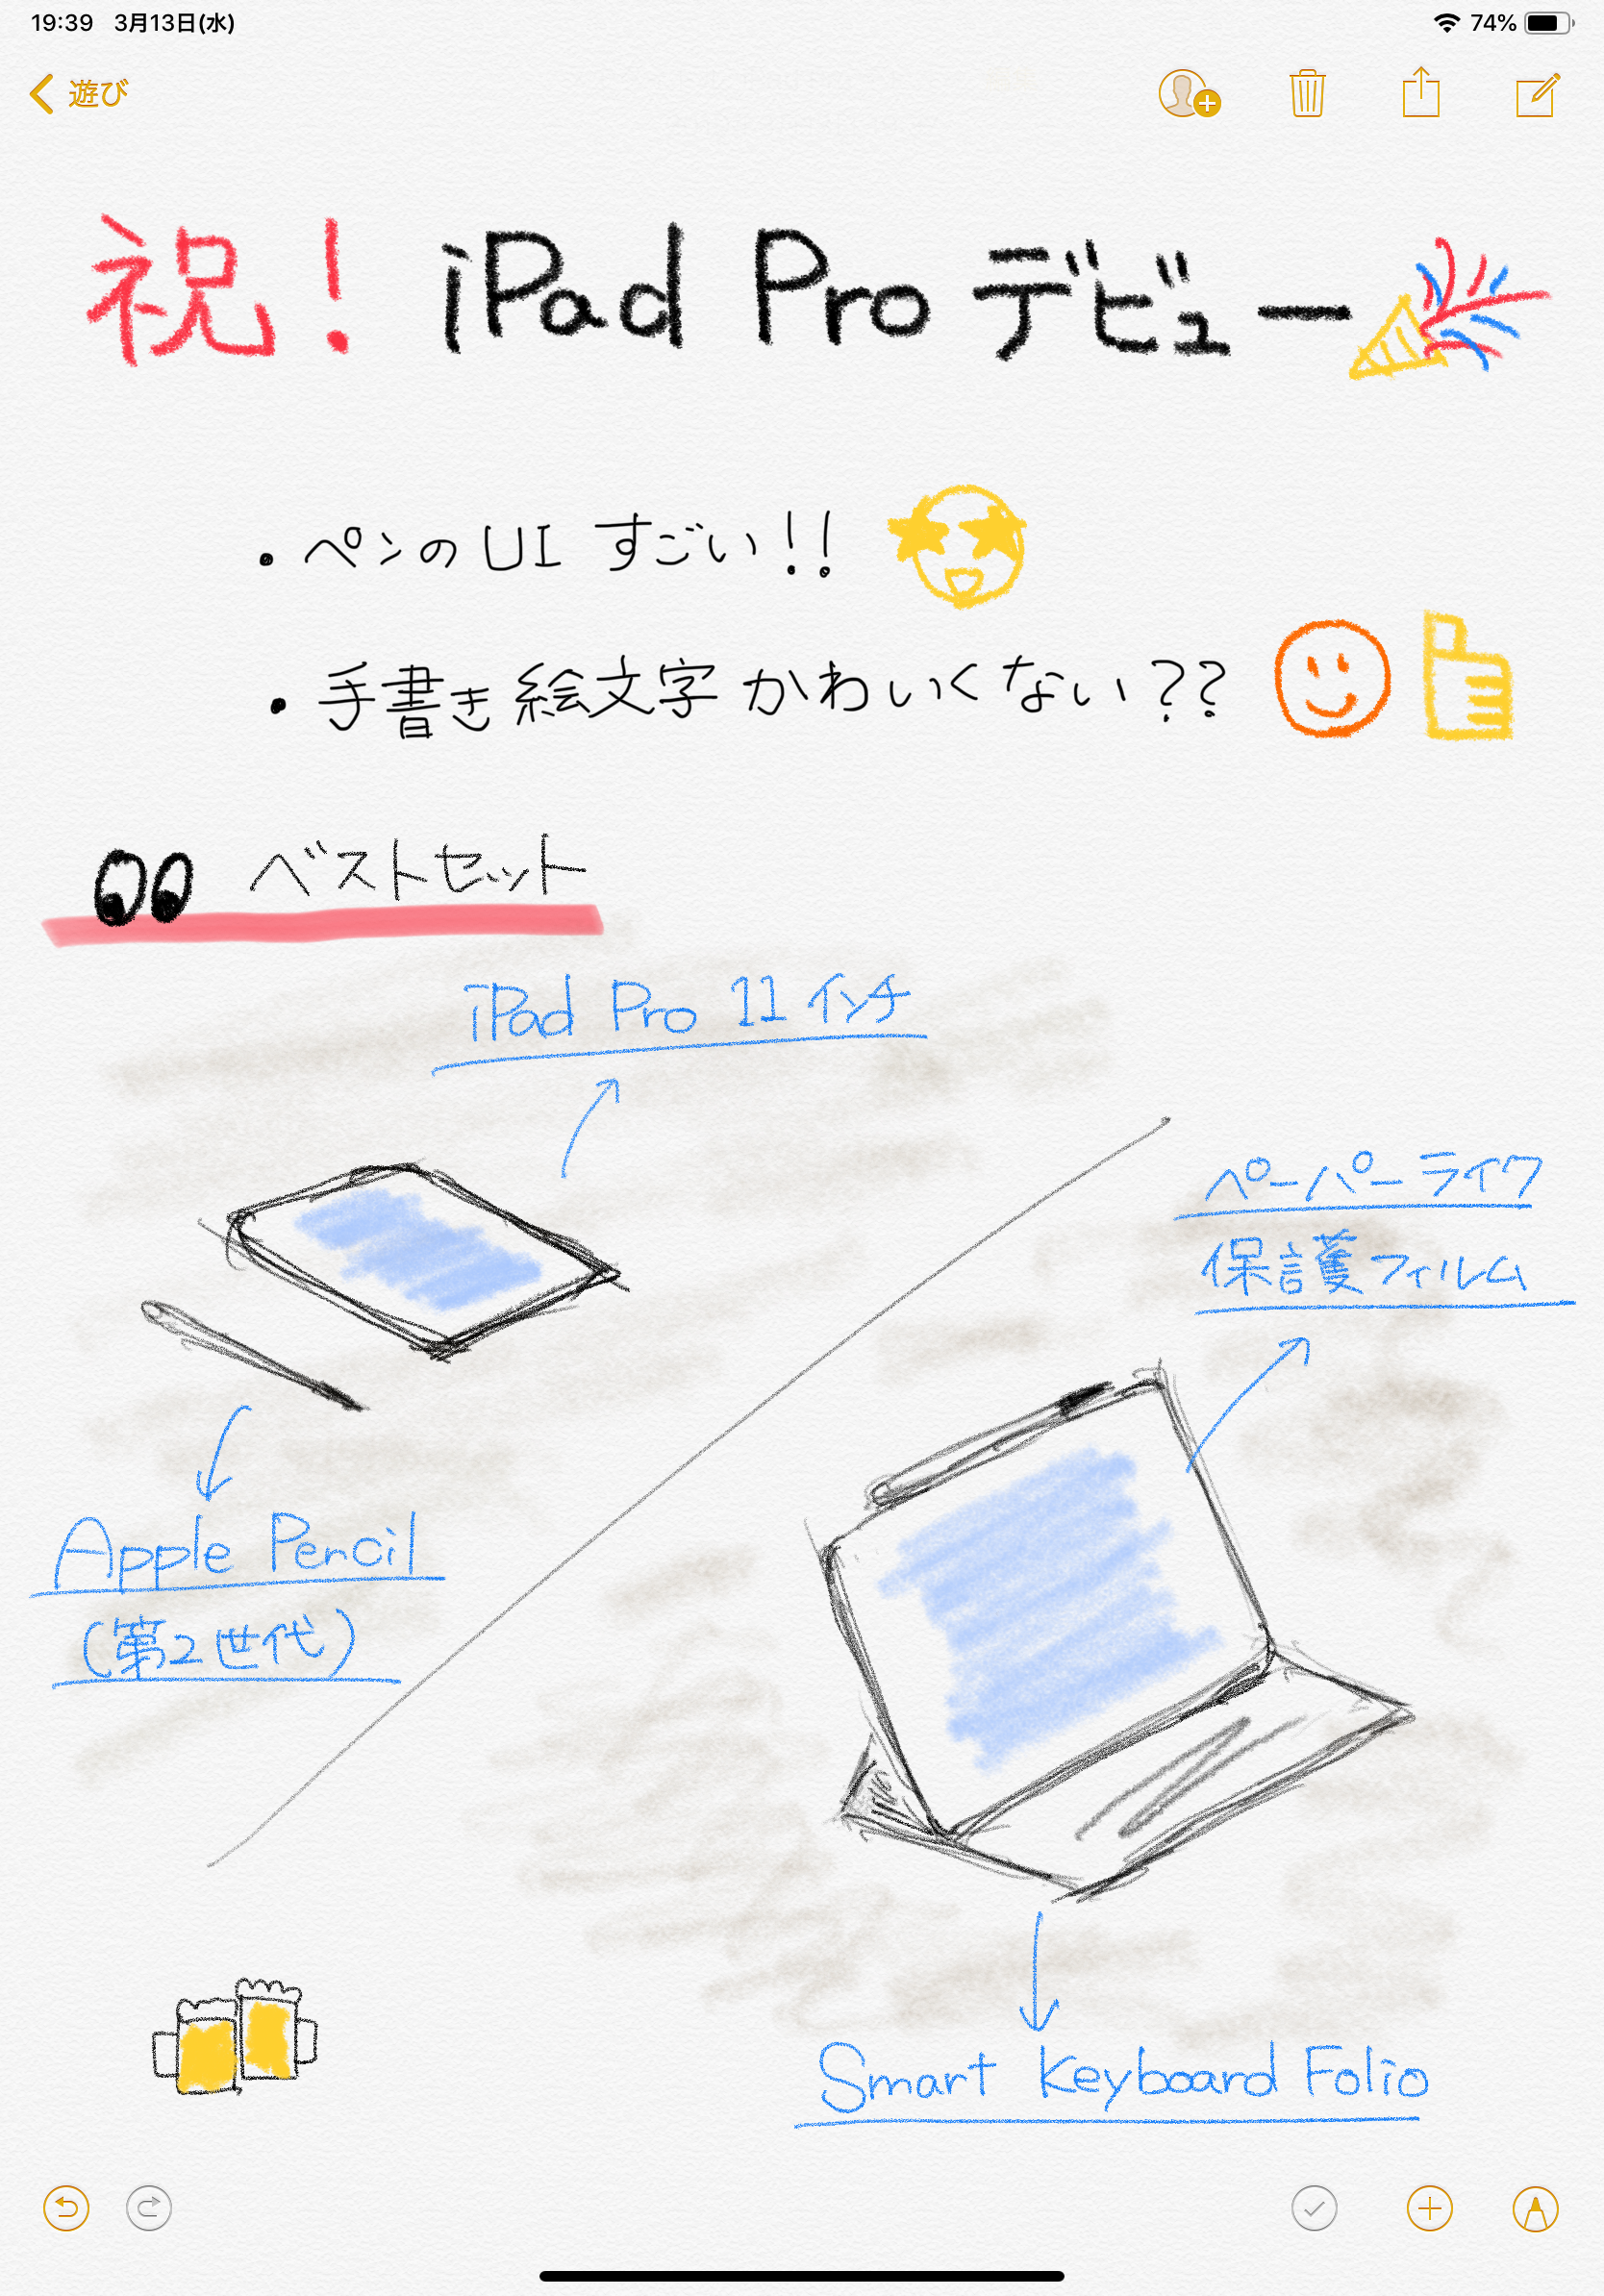 iPad Pro Work#1 デビュー